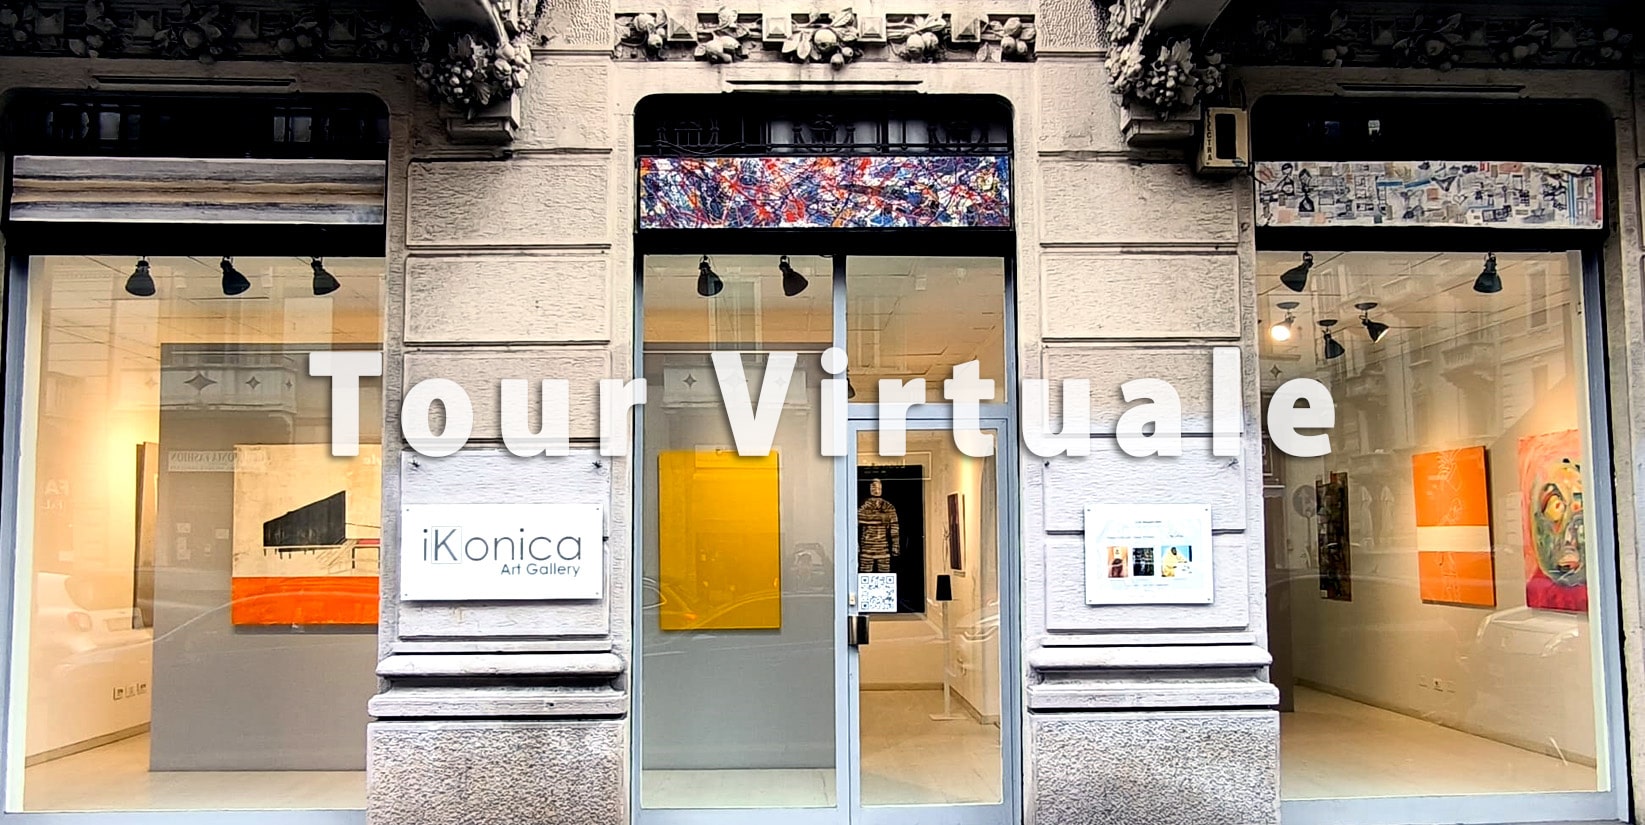 iKonica Art Gallery: Tour Virtuale della galleria d'arte di Milano